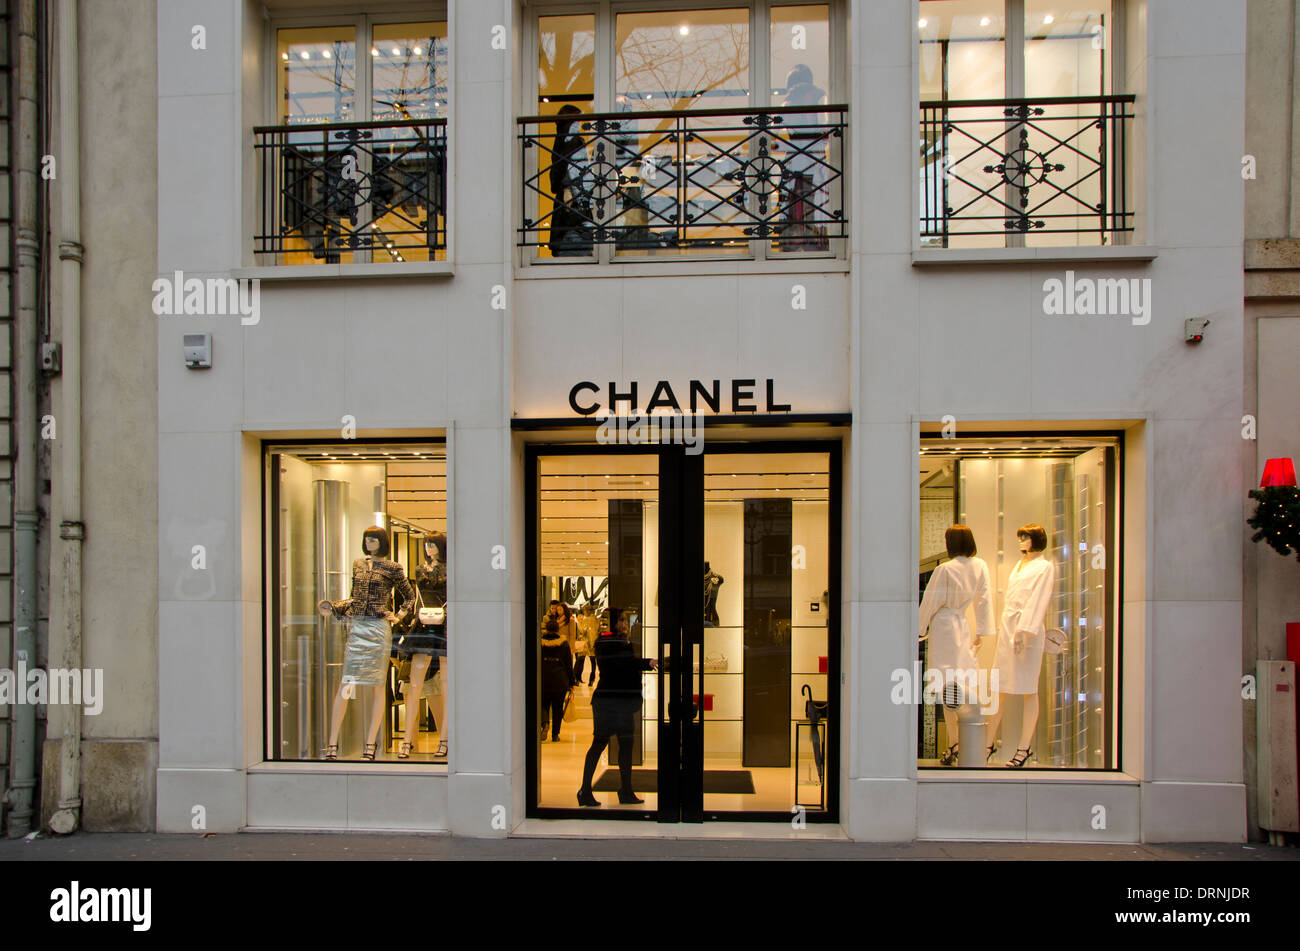 Façade d'une boutique Chanel, boutique, à Photo Stock Alamy